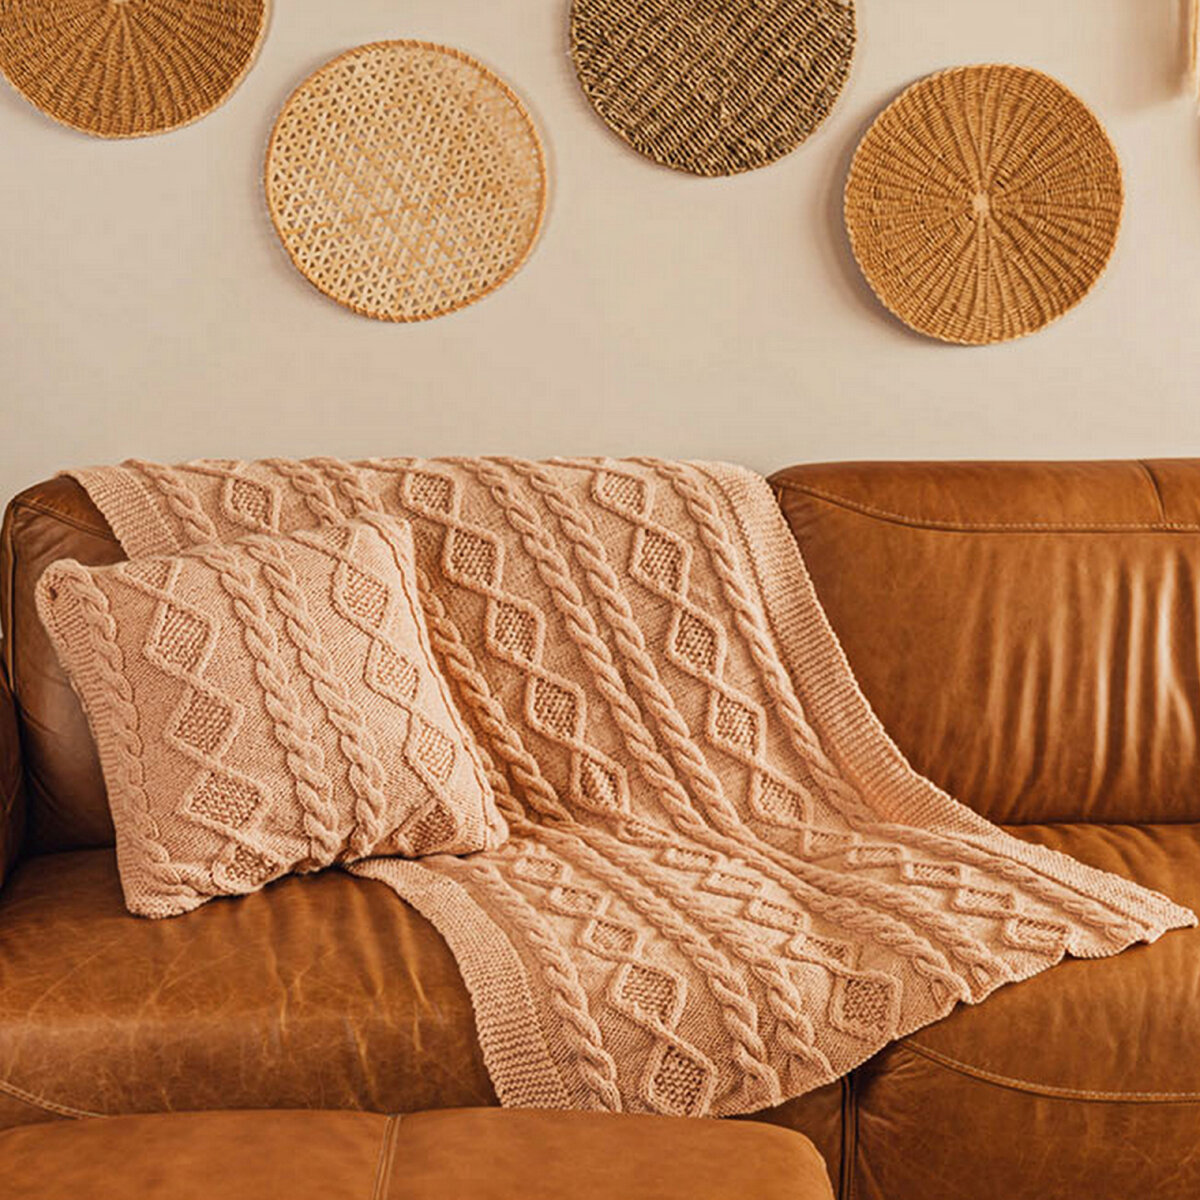 Как изготовить чехол для подушки своими руками, больше 30 идей и схем вязания